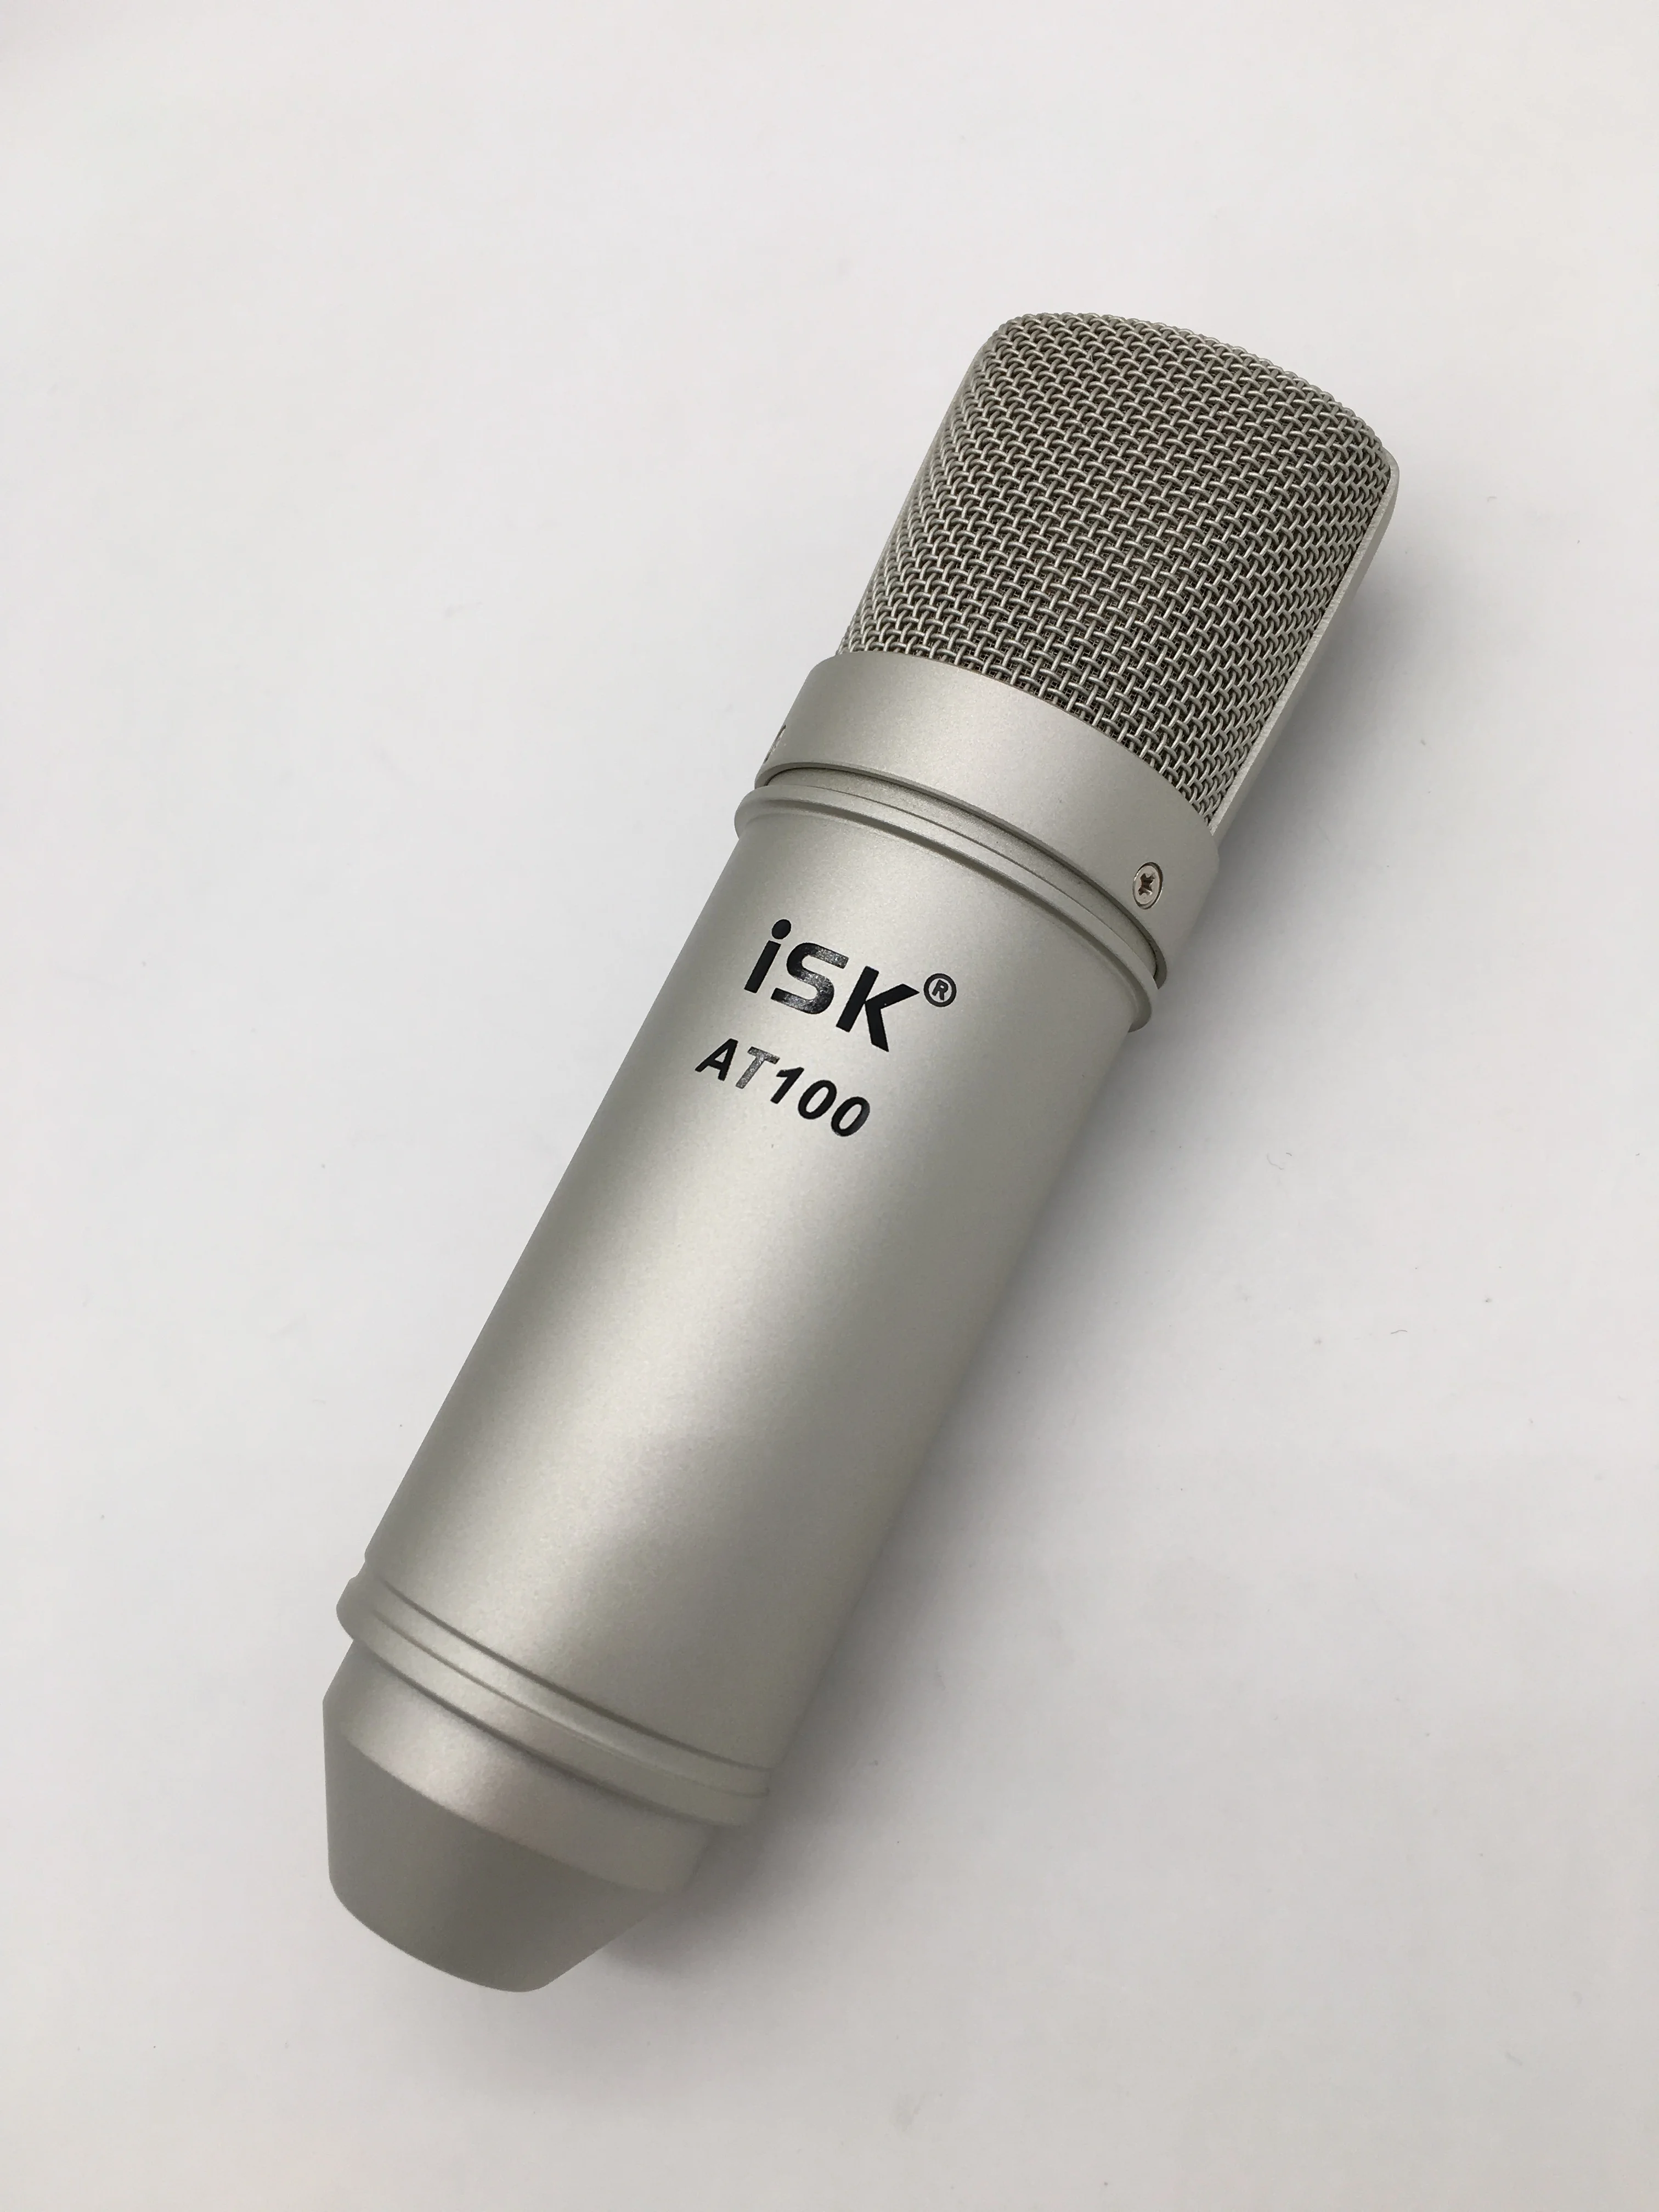 ISK AT100 профессиональный конденсаторный микрофон для звукозаписи студии, вещательной станции, сцены, компьютерная сеть караоке